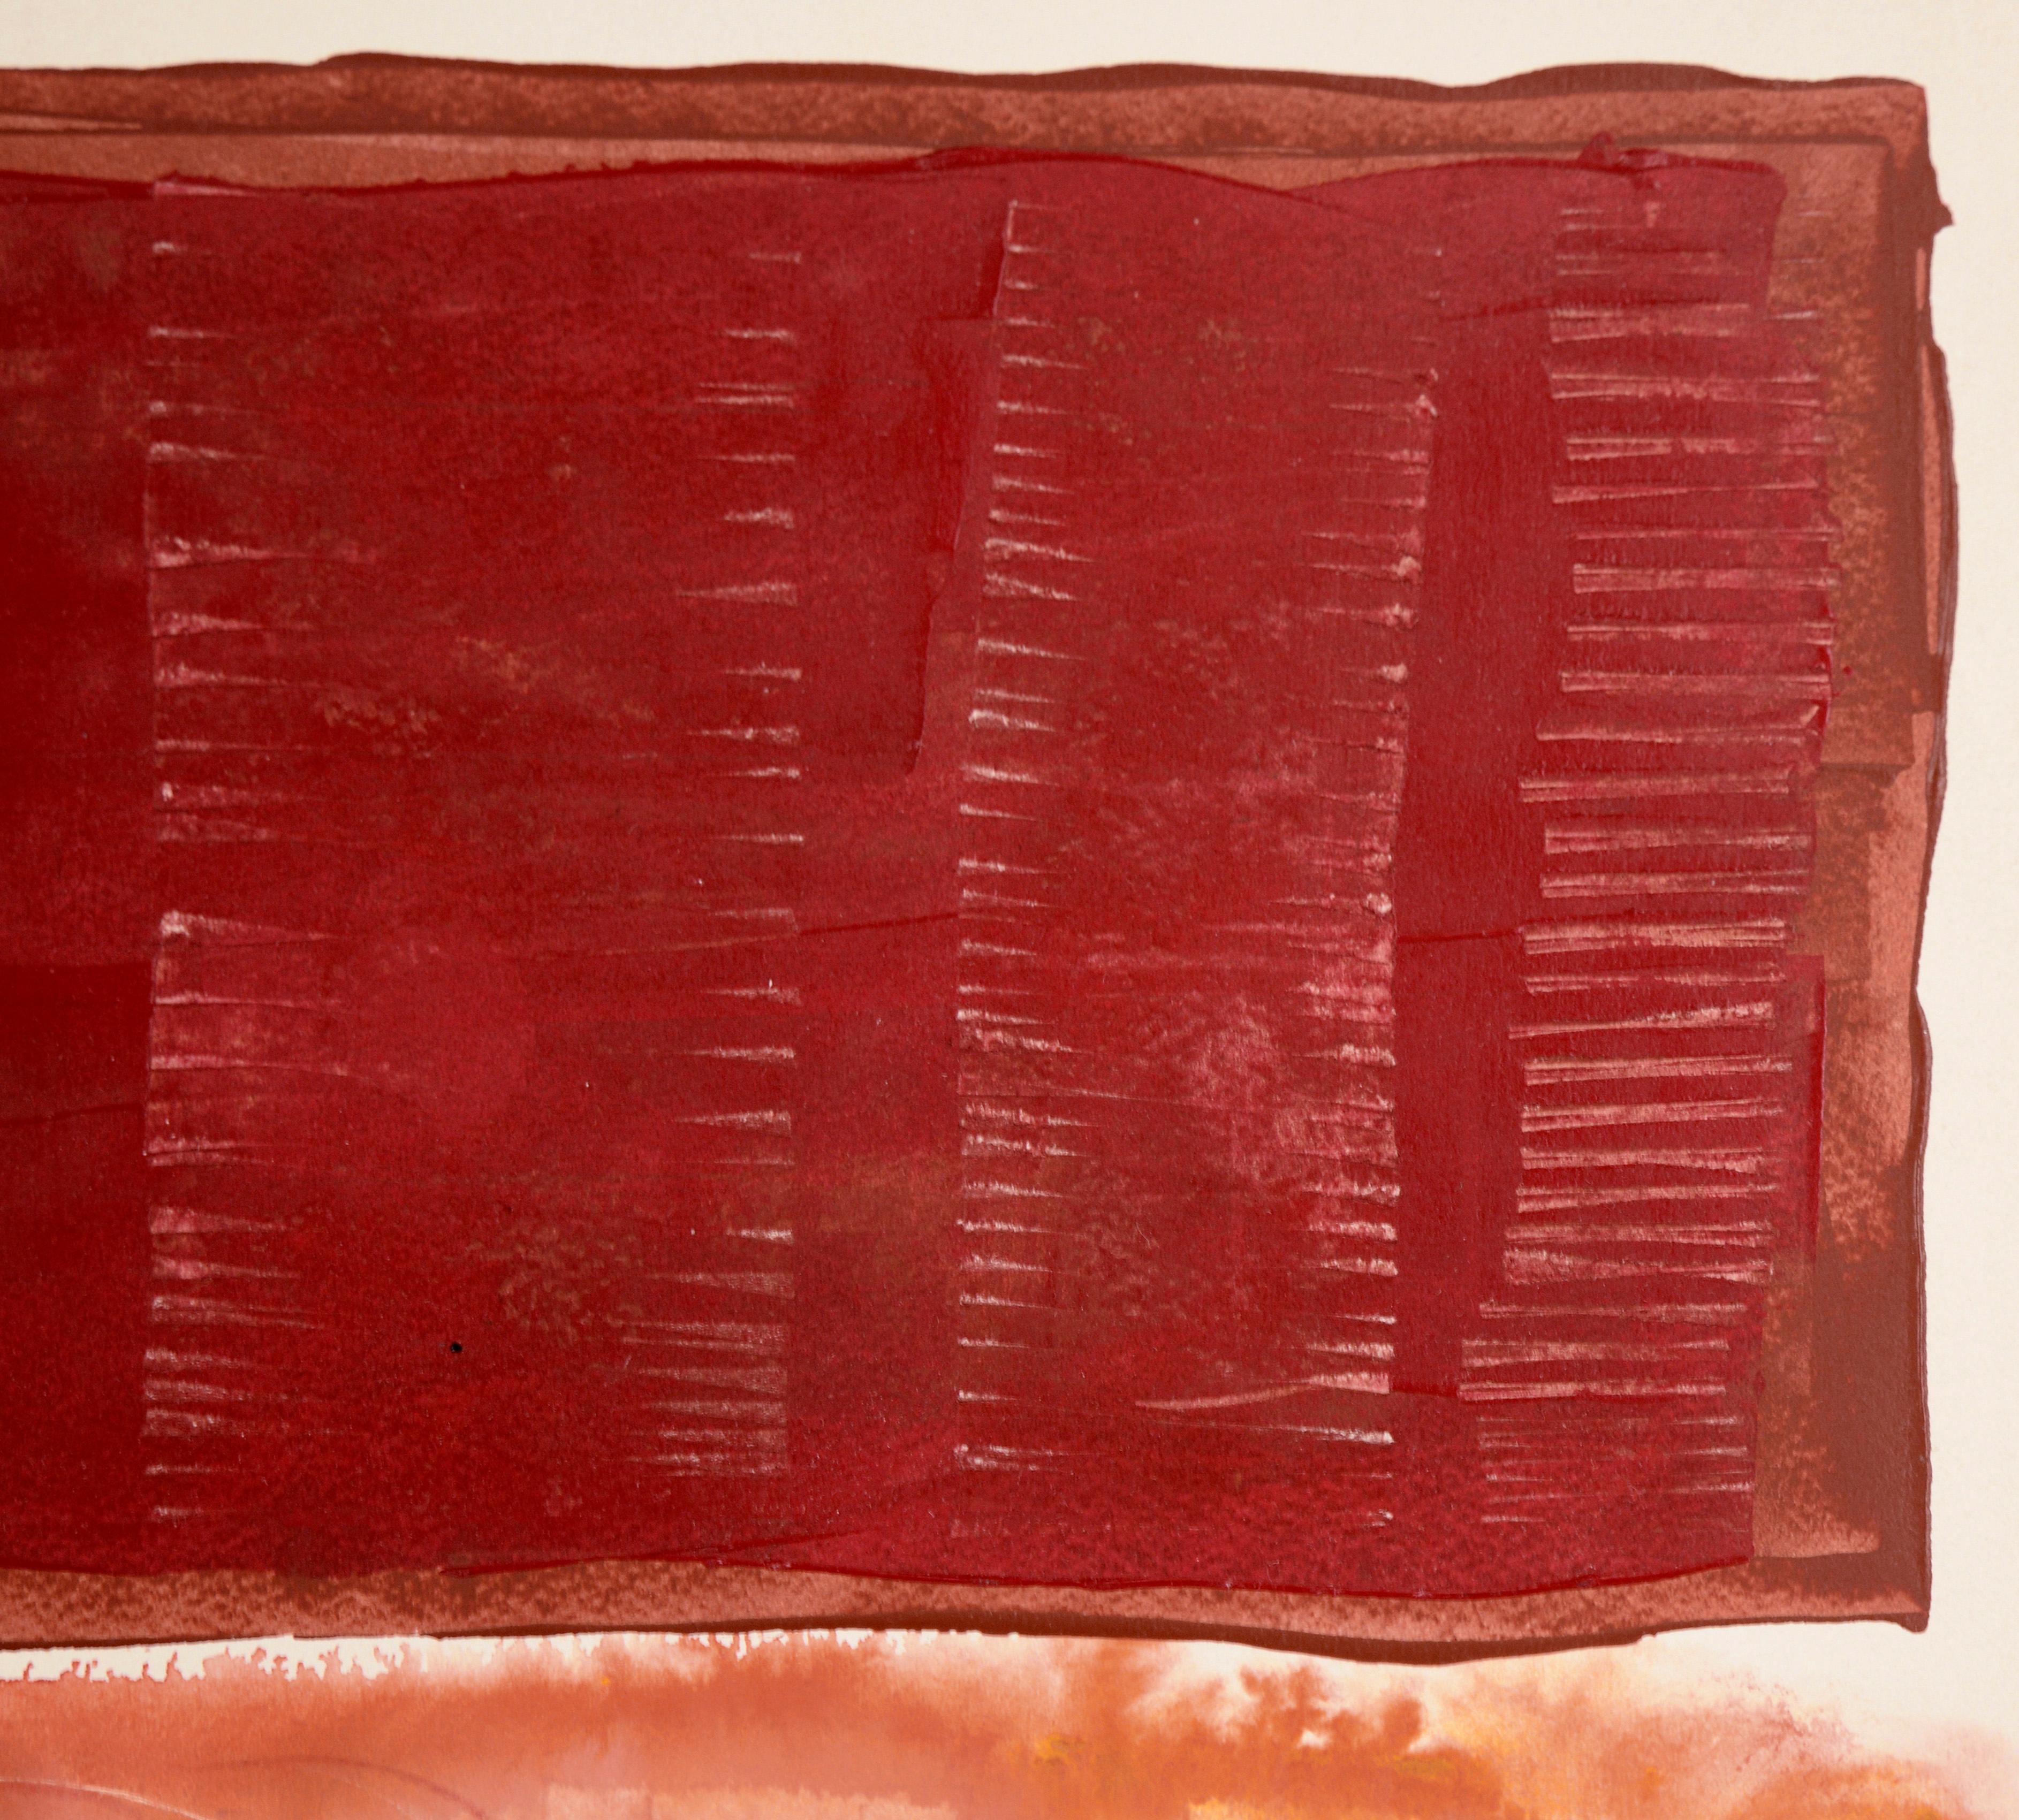 Portrait avec blocs roses et rouges à l'acrylique sur papier épais

Portrait abstrait lumineux de Ricardo de Silva (Brésilien, 20e siècle). Deux grands blocs de couleur sont disposés horizontalement en haut de la composition. Un portrait simplifié